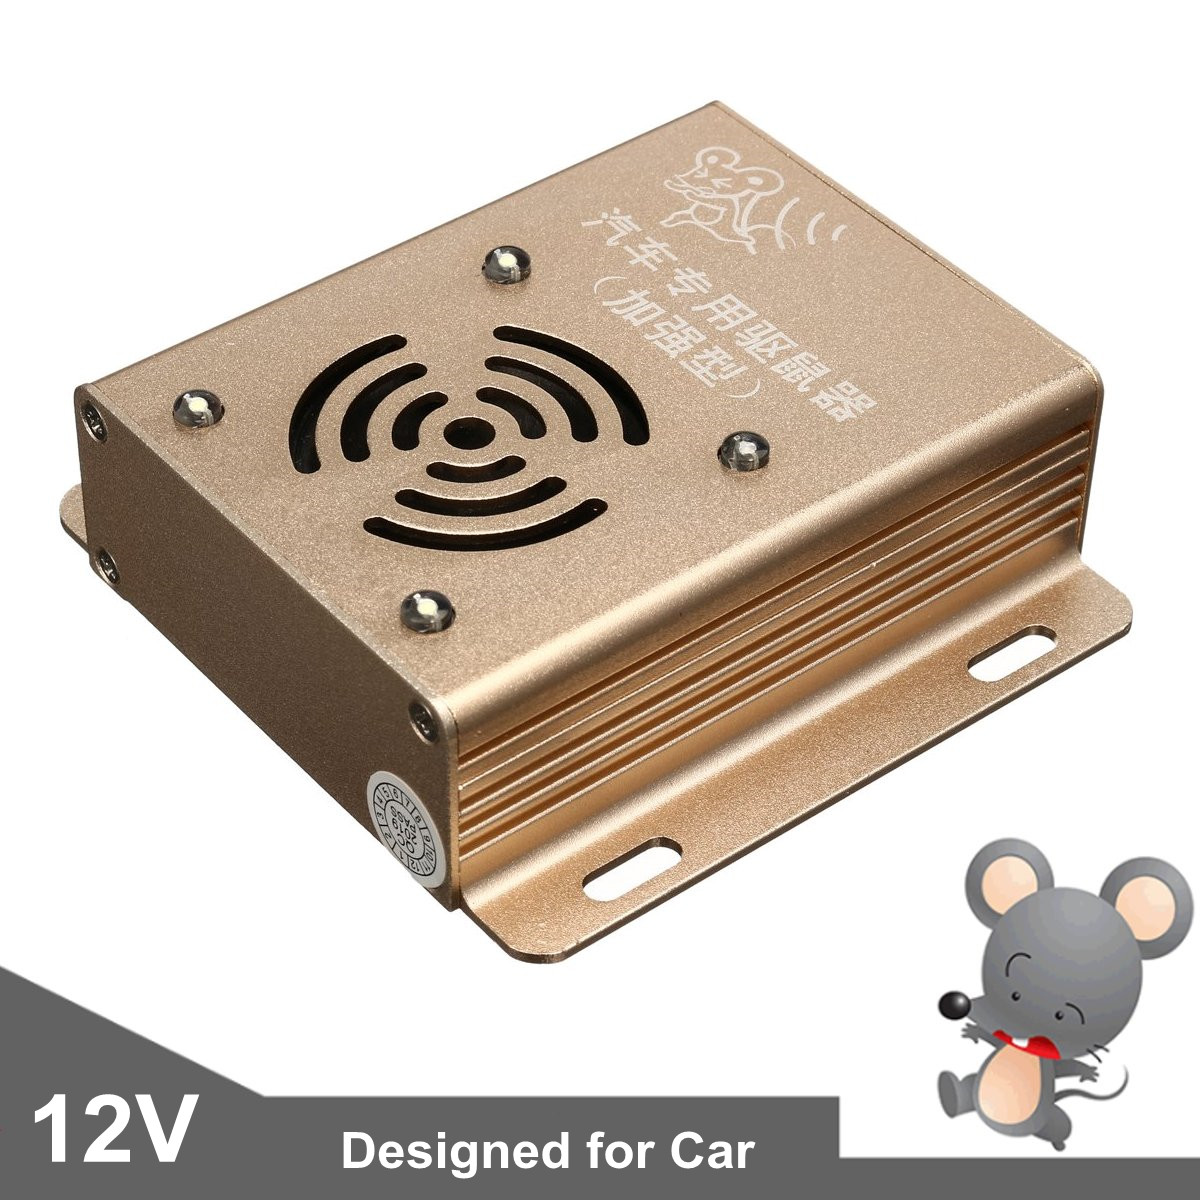 12V-Ultrasonic-Auto-Car-Mouse-Repeller-Vehicle-Rat-Rodent-Pest-Animal-Deterrent-Animal-Repeller-1521890